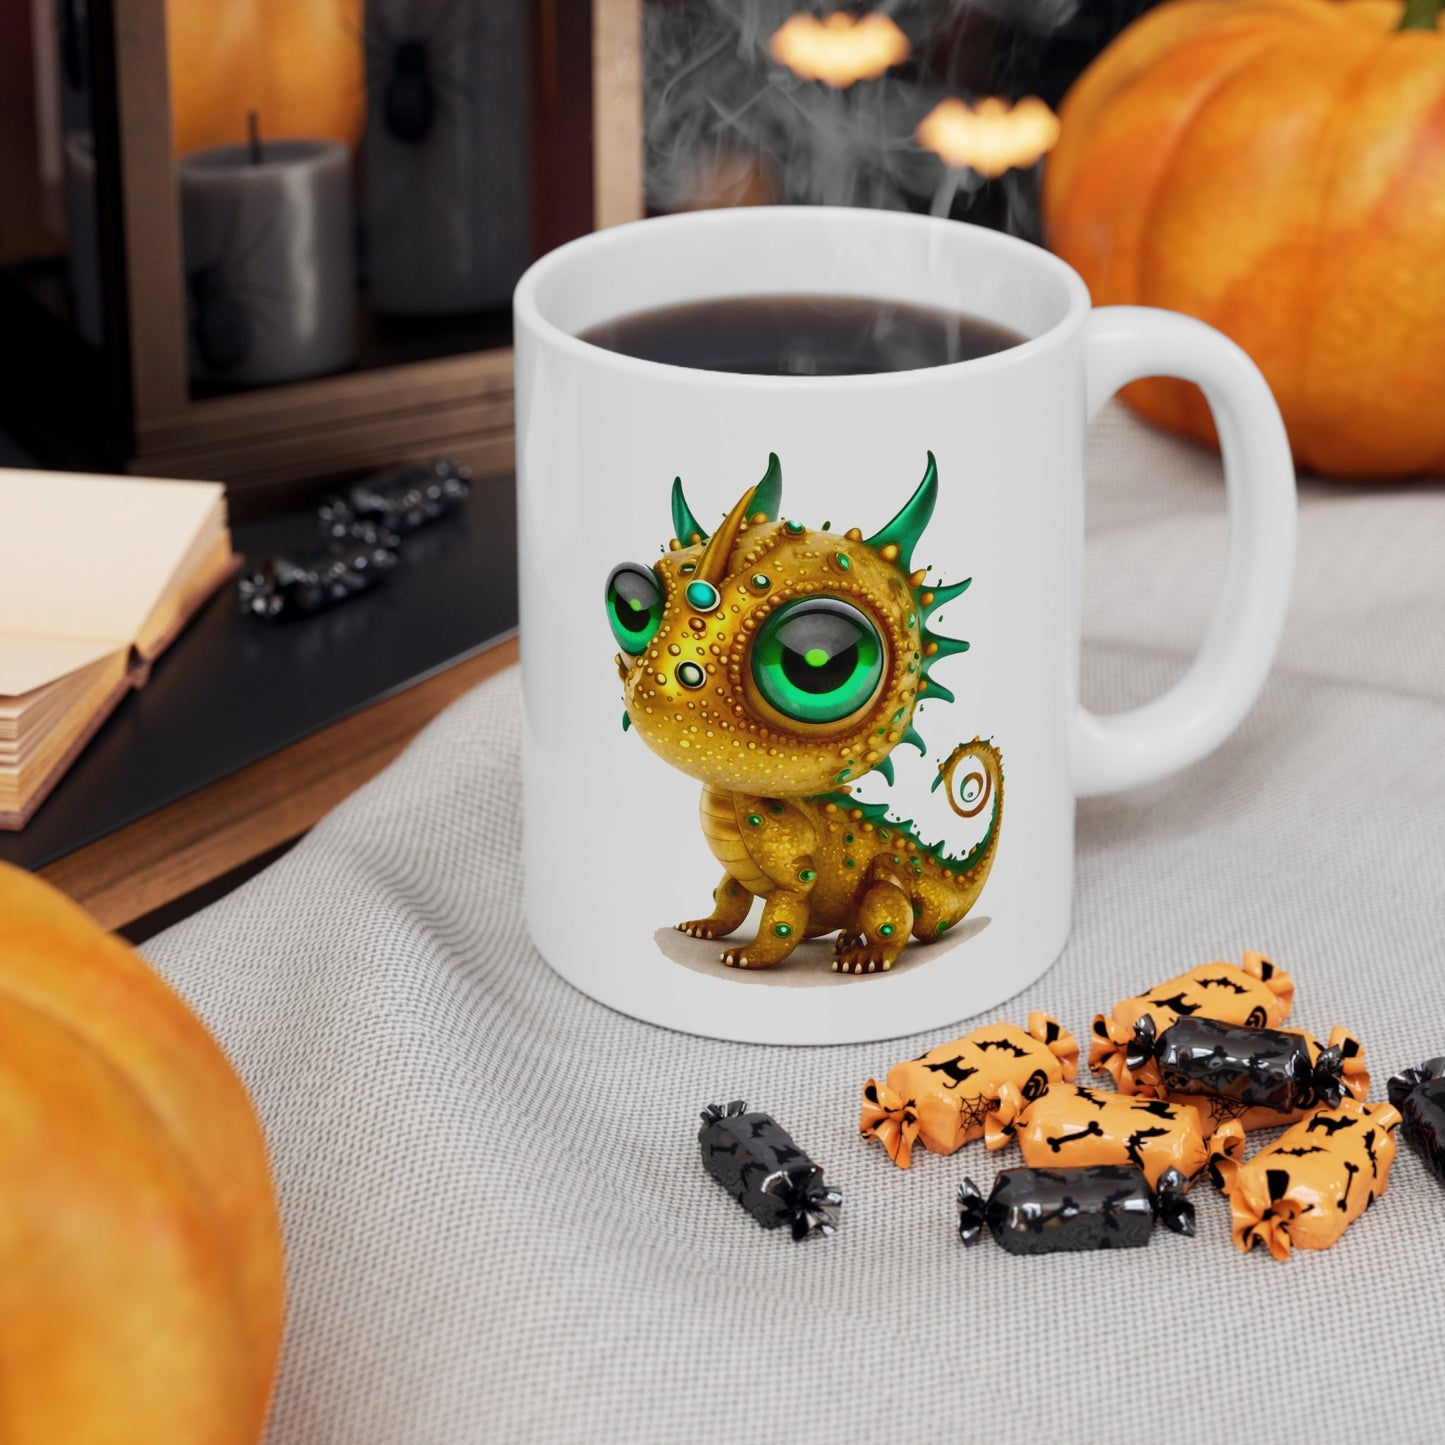 Golden Green Adorable Baby Dragon Coffee Mug, Heart of a Dragon Mug, White Ceramic Mug for Dragon Lovers, Gift Mug for your Dragon Spirit